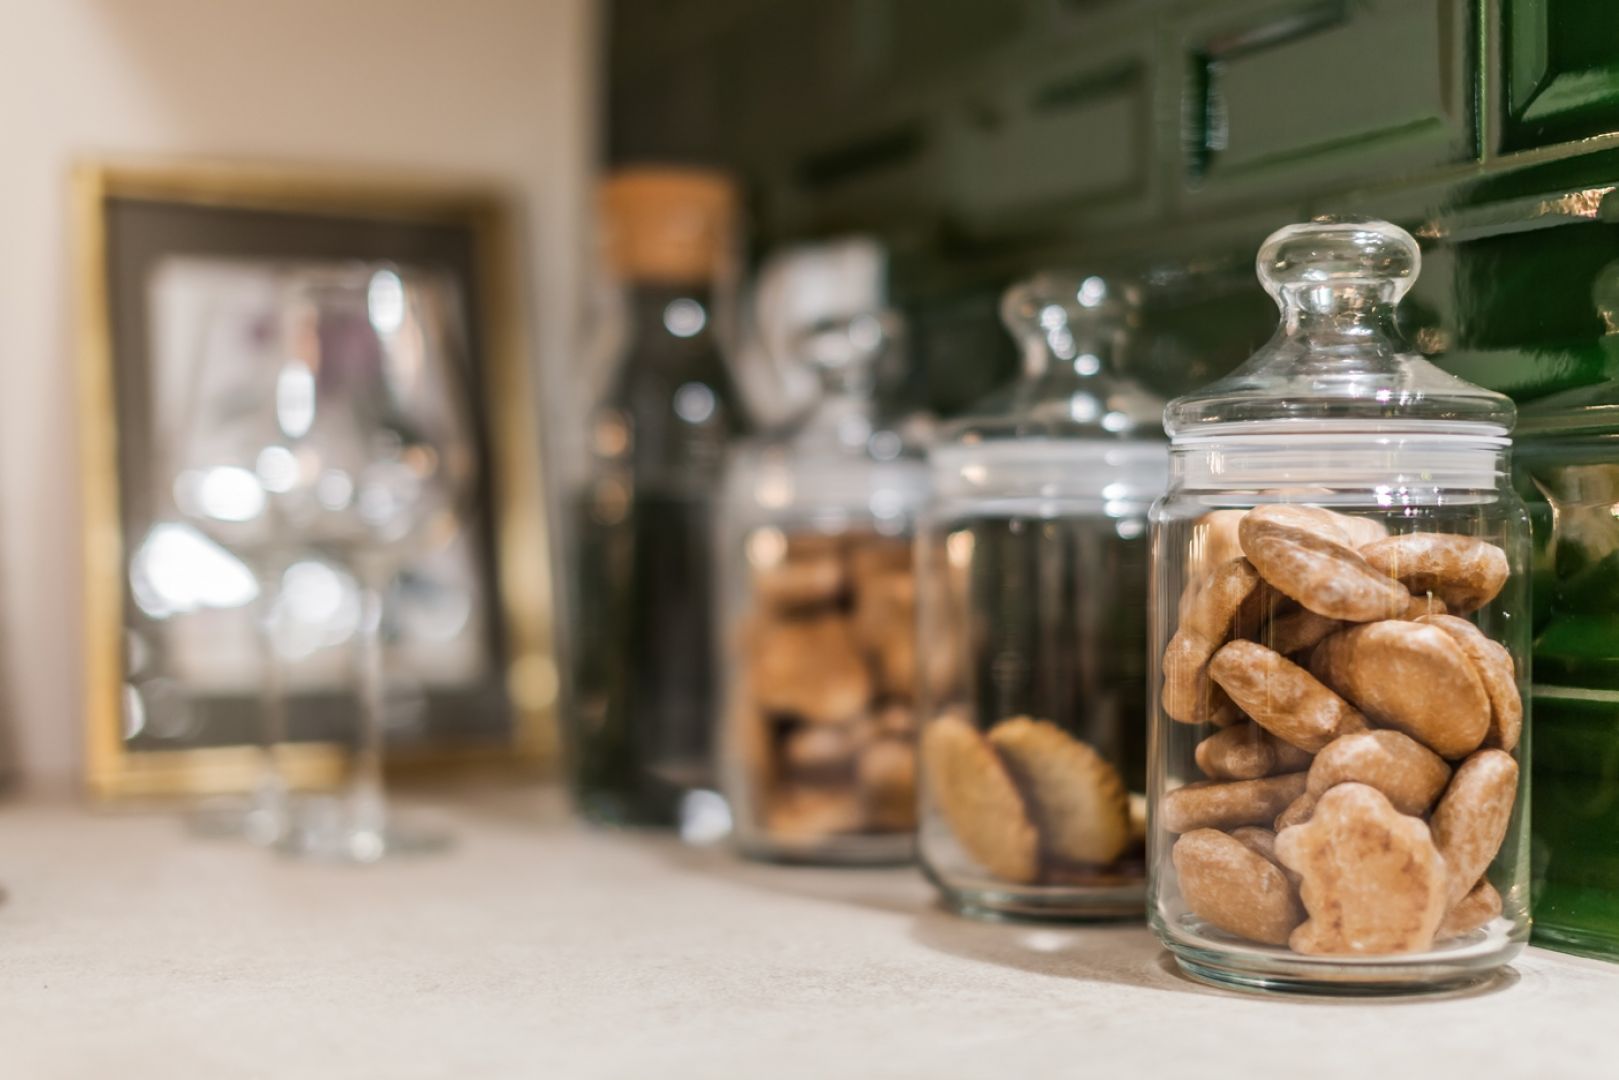 Pierniczki lub kruche ciasteczka umieszczone w specjalnych szklanych słojach zbudują świąteczny nastrój, zachęcając przy tym gości i domowników do poczęstunku. Fot. Pracownia Kodo